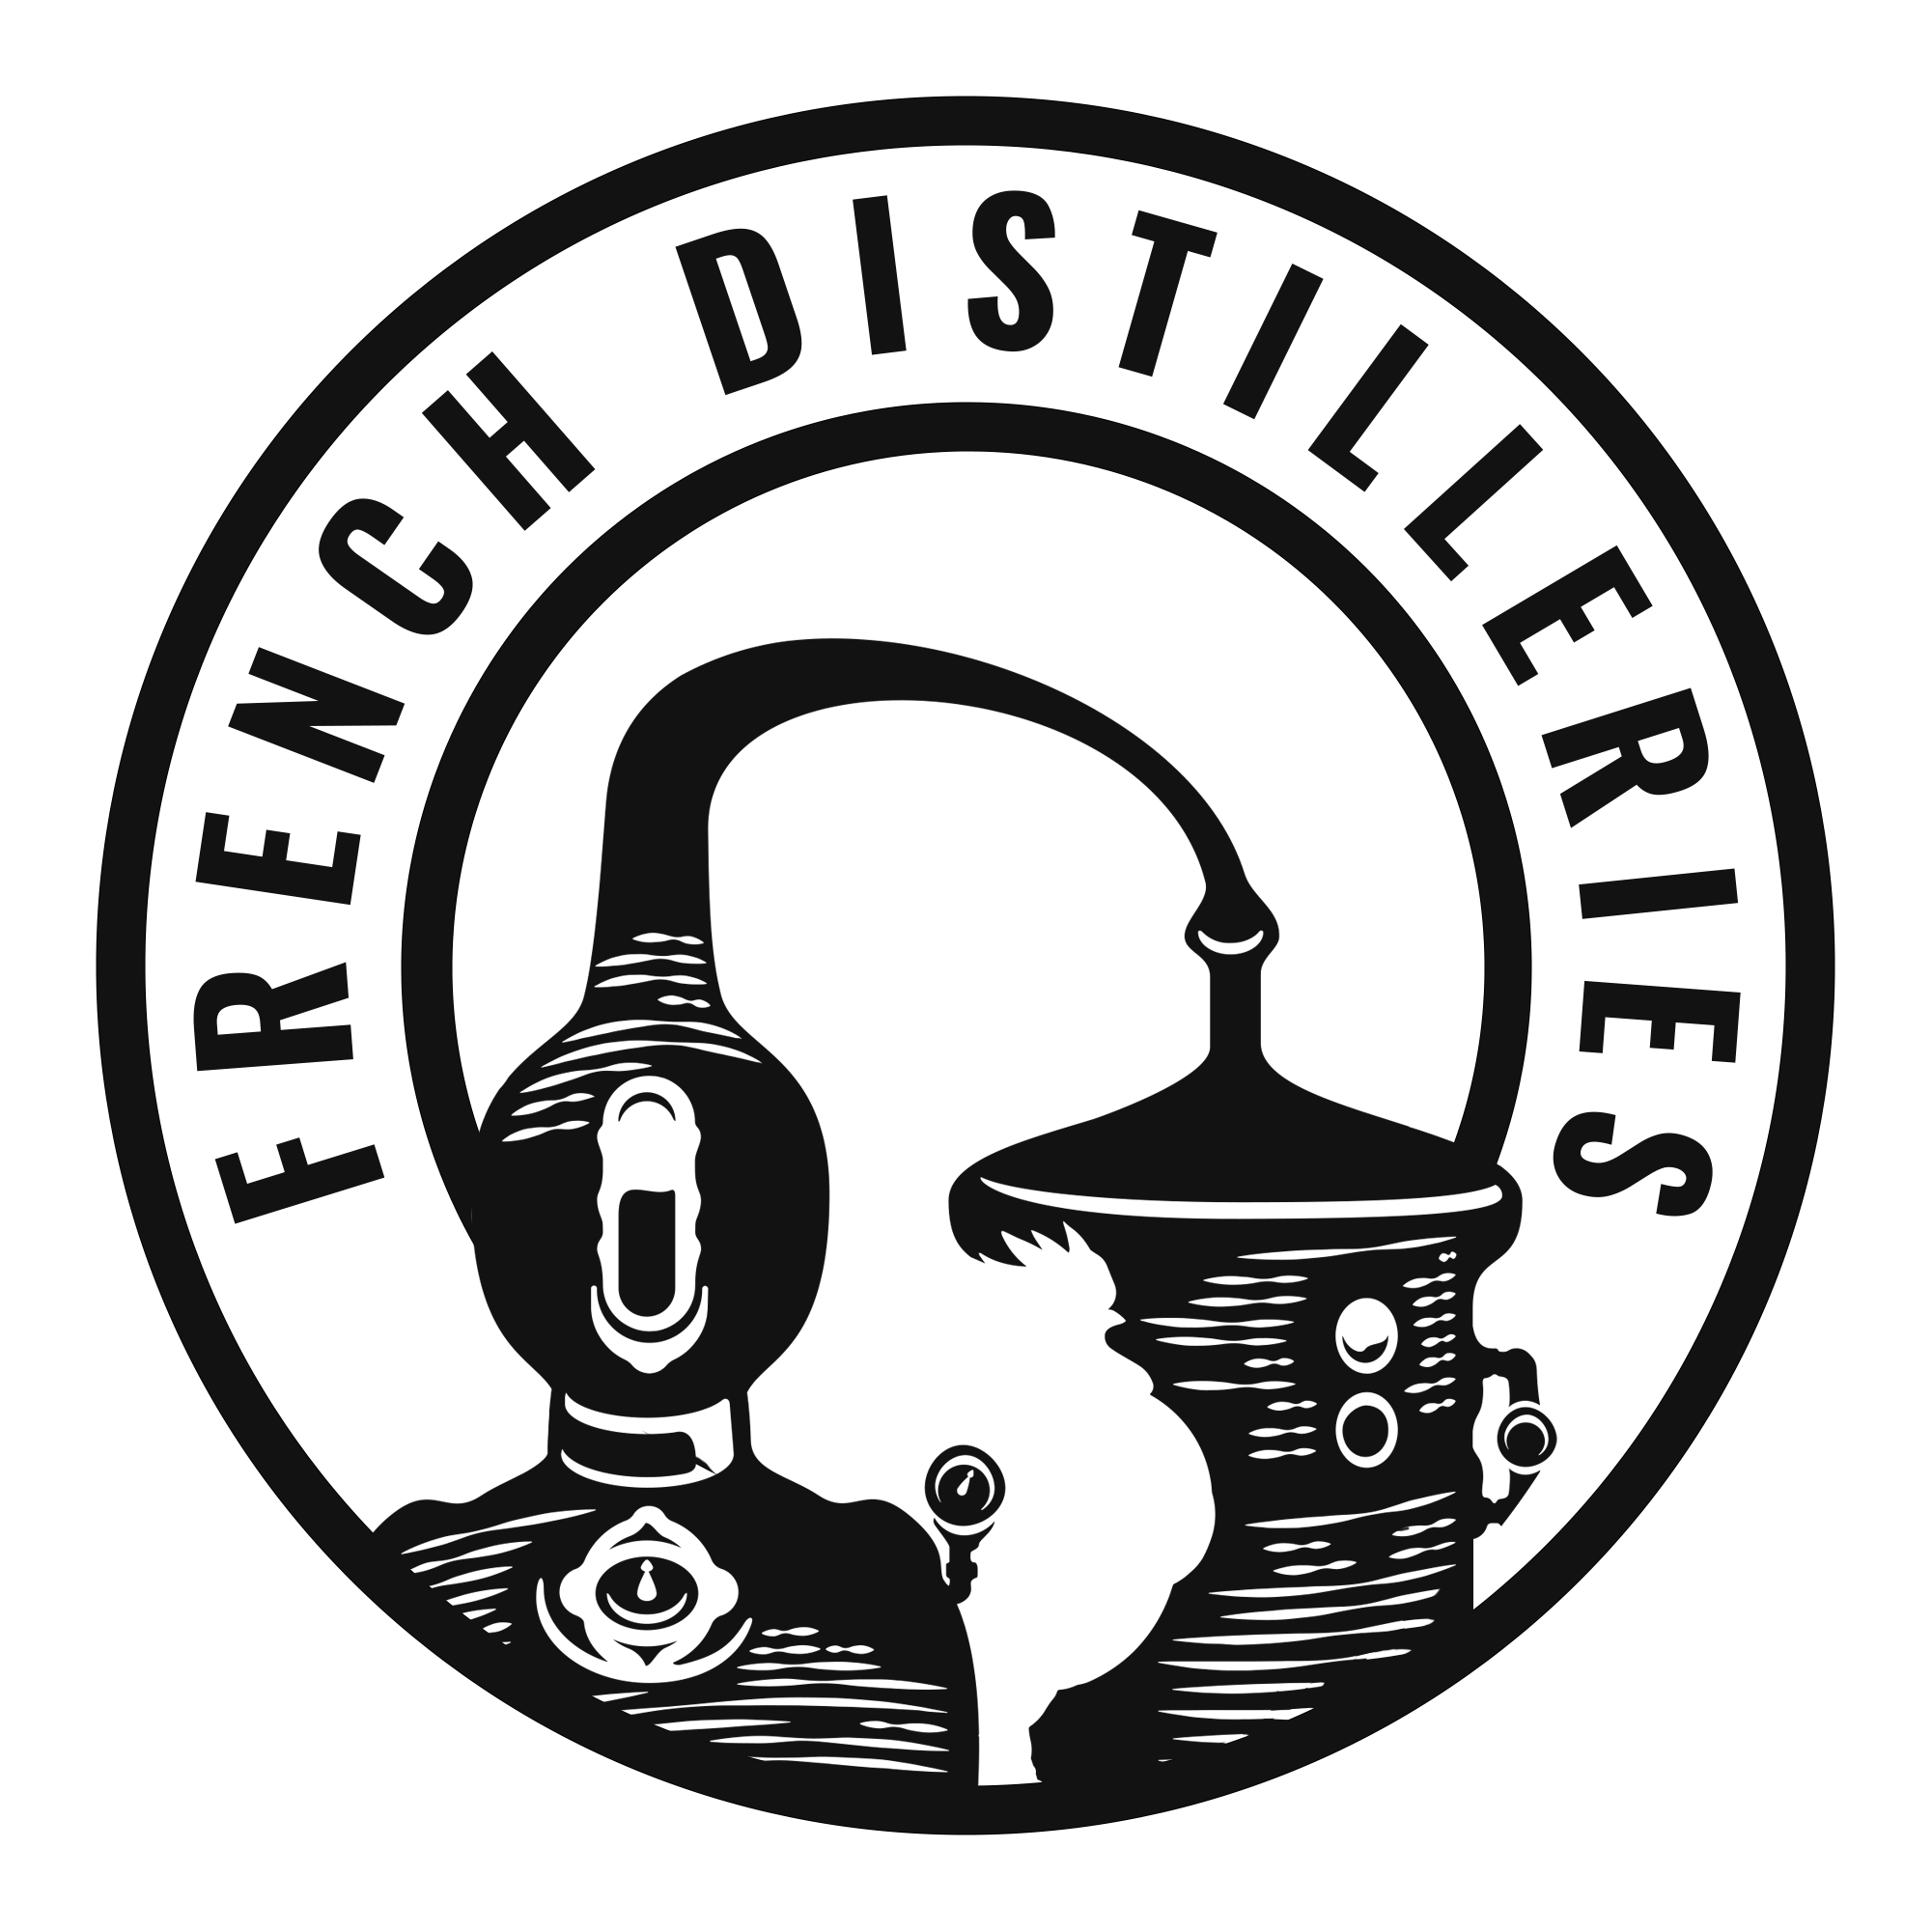 French Distilleries